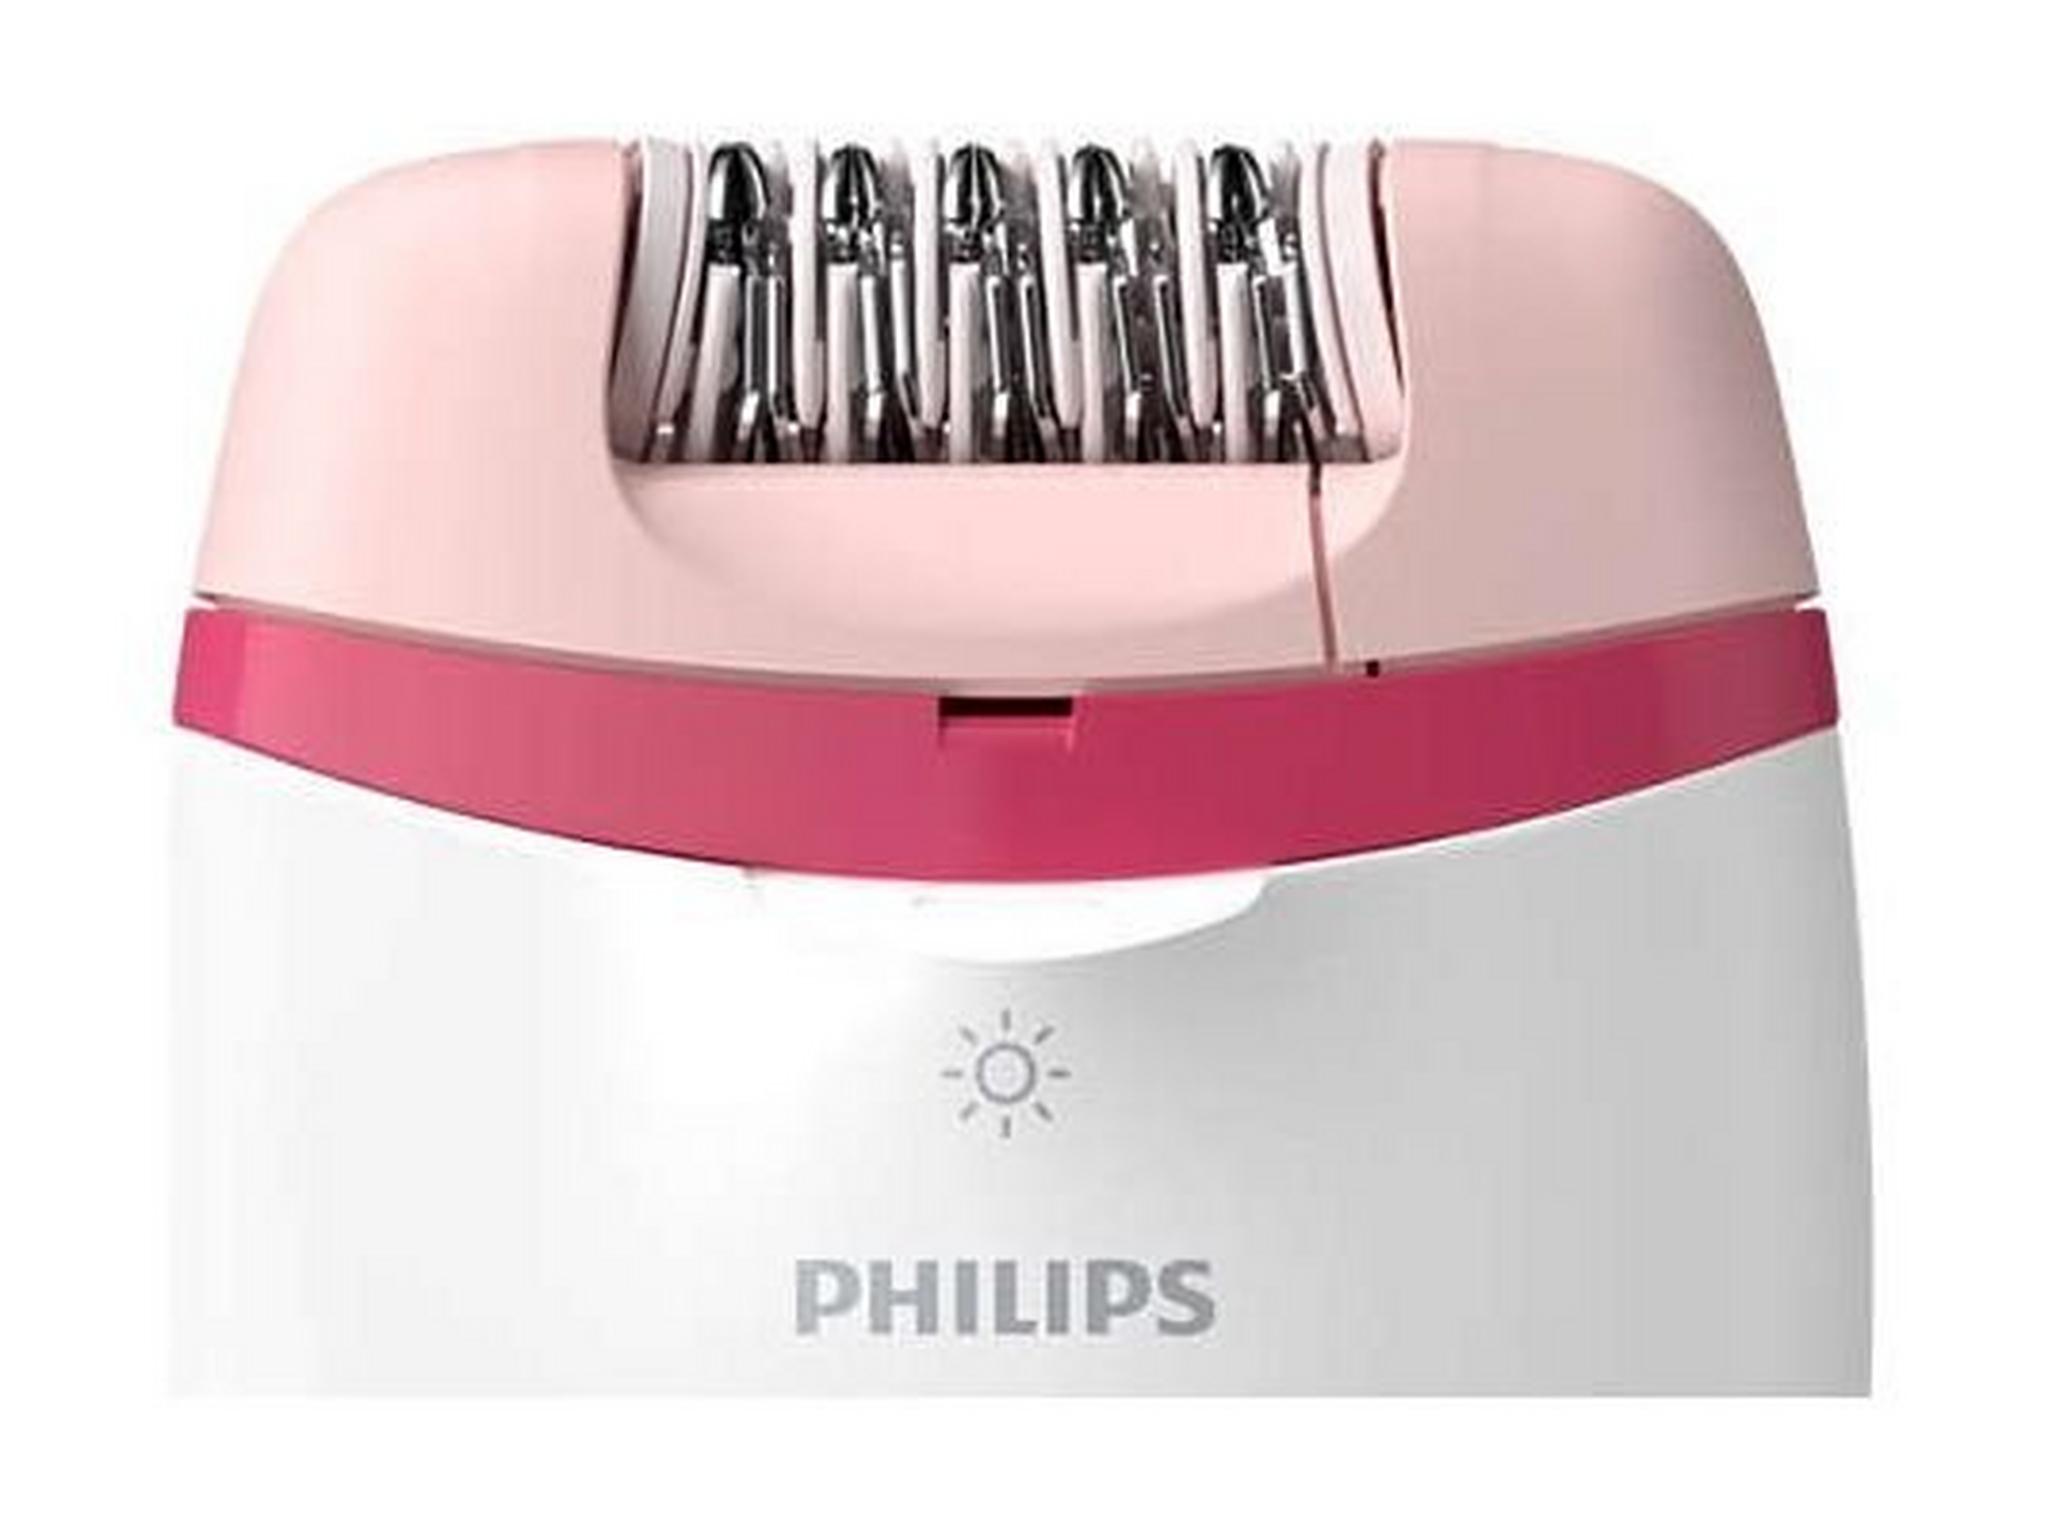 ماكينة إزالة الشعر المدمجة من فيليبس مع تقنية أوبتي لايت لتحديد أفضل الشعر، سلكية، 3 ملحقات، BRE255/00 - أبيض/وردي